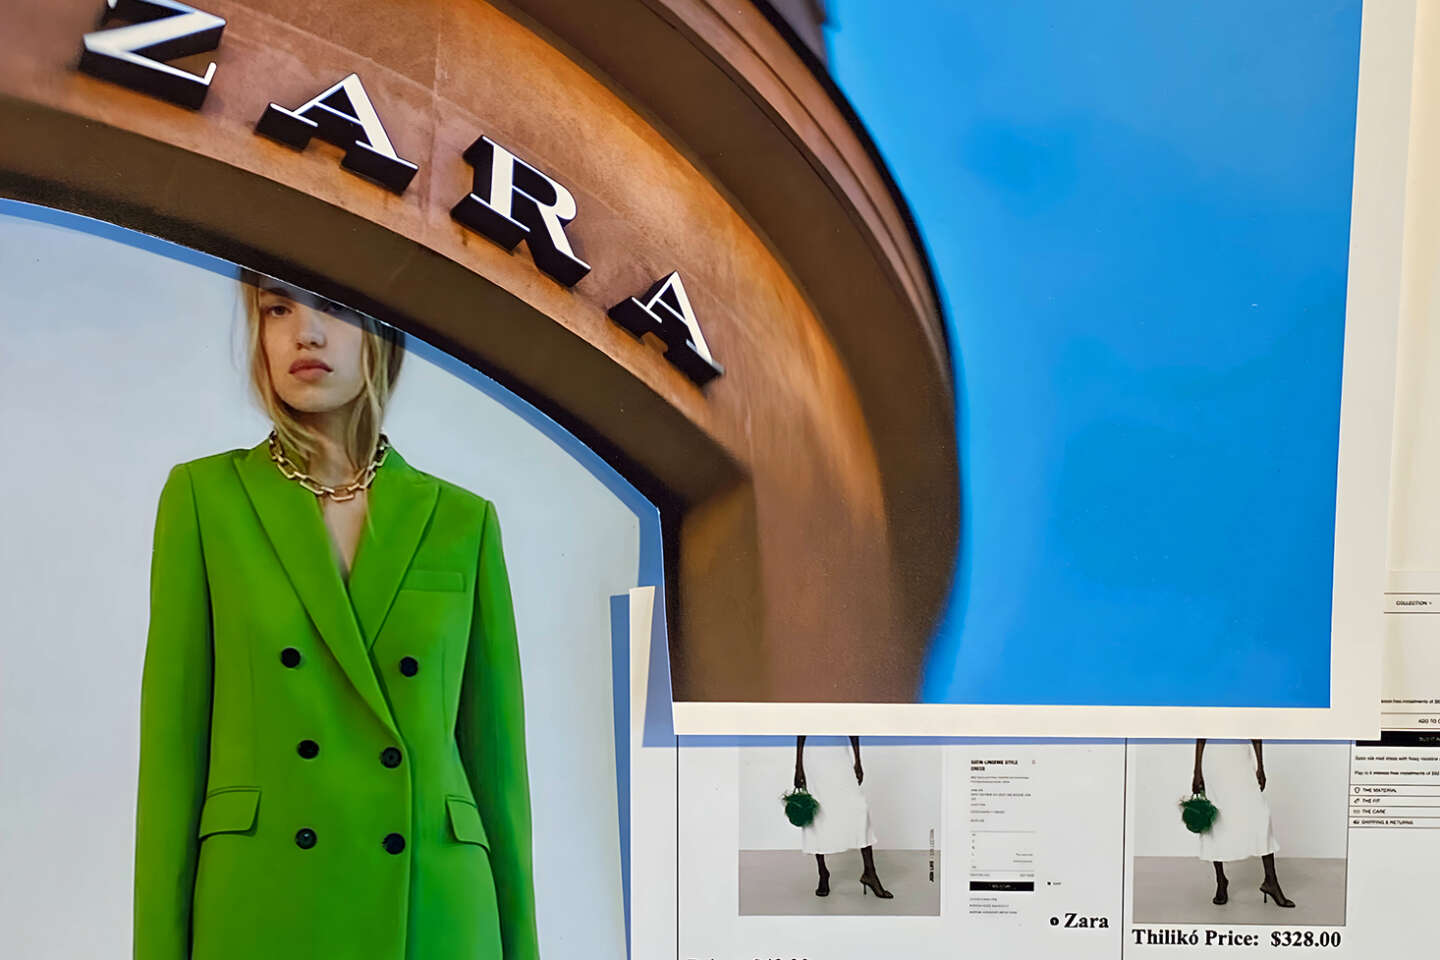 Zara copié-collé par une éphémère marque californienne